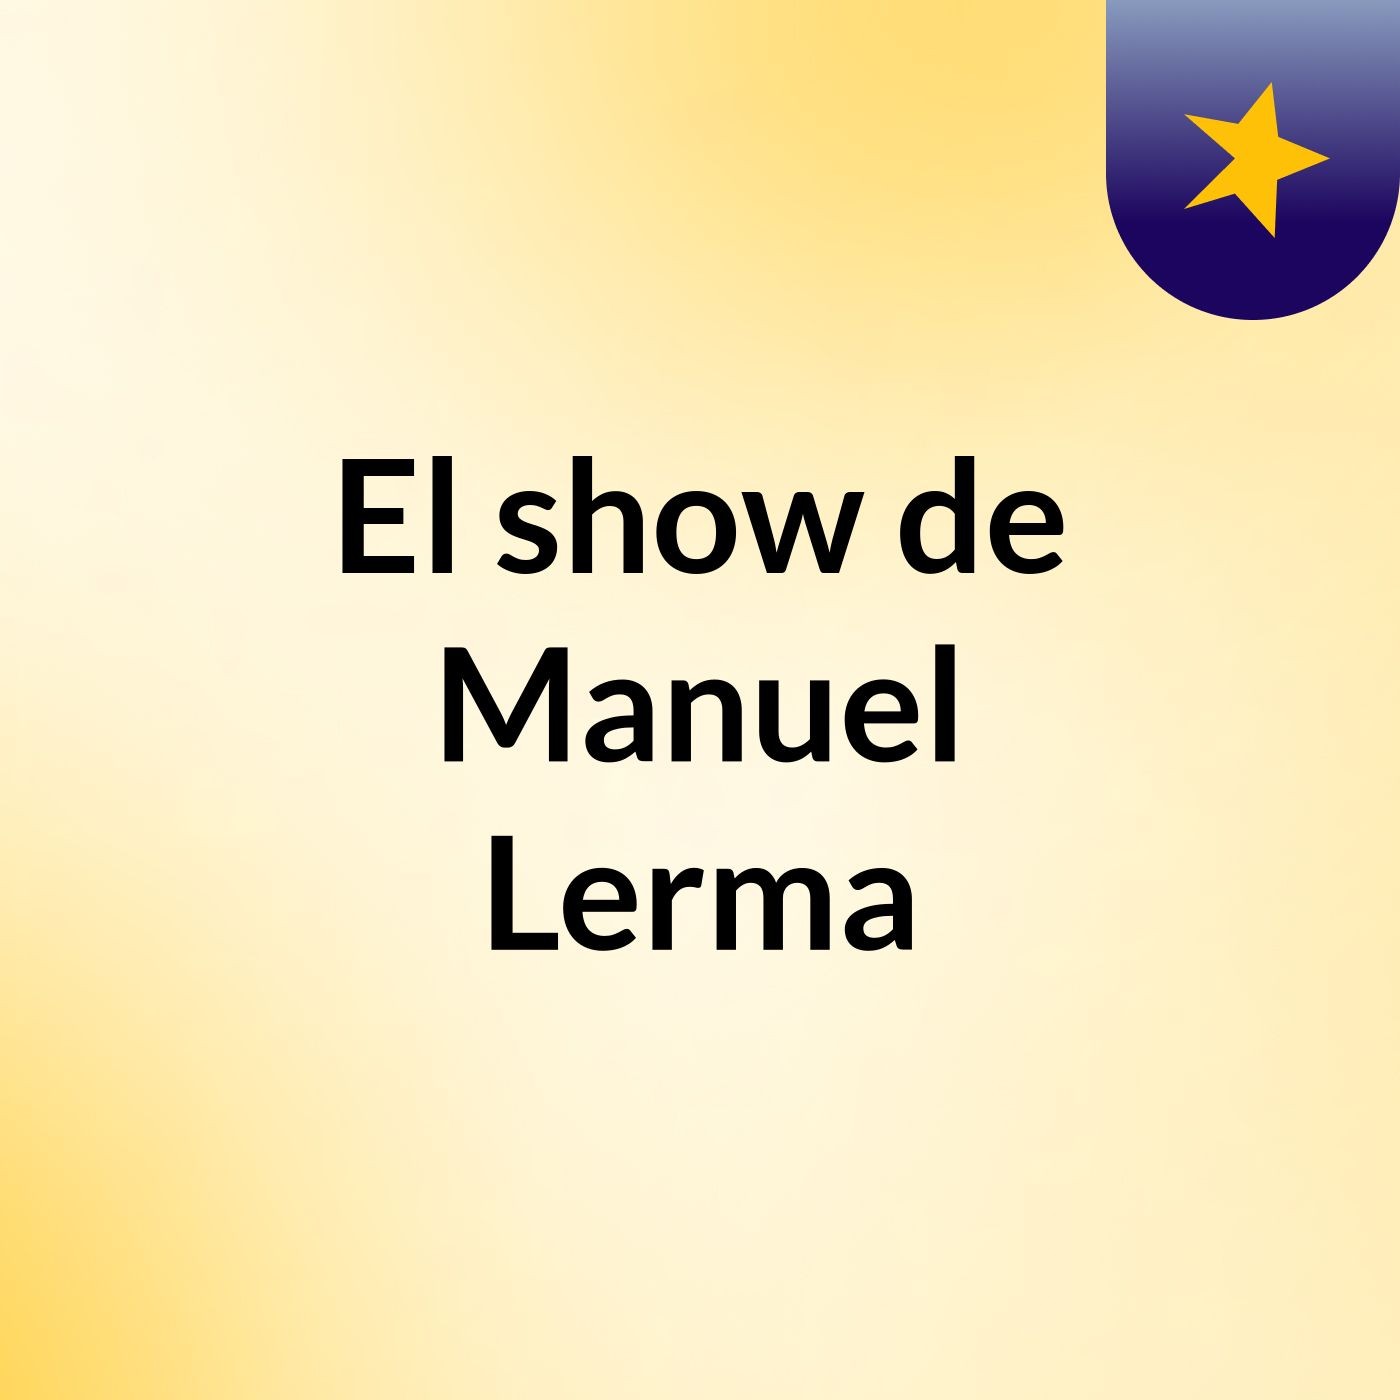 El show de Manuel Lerma